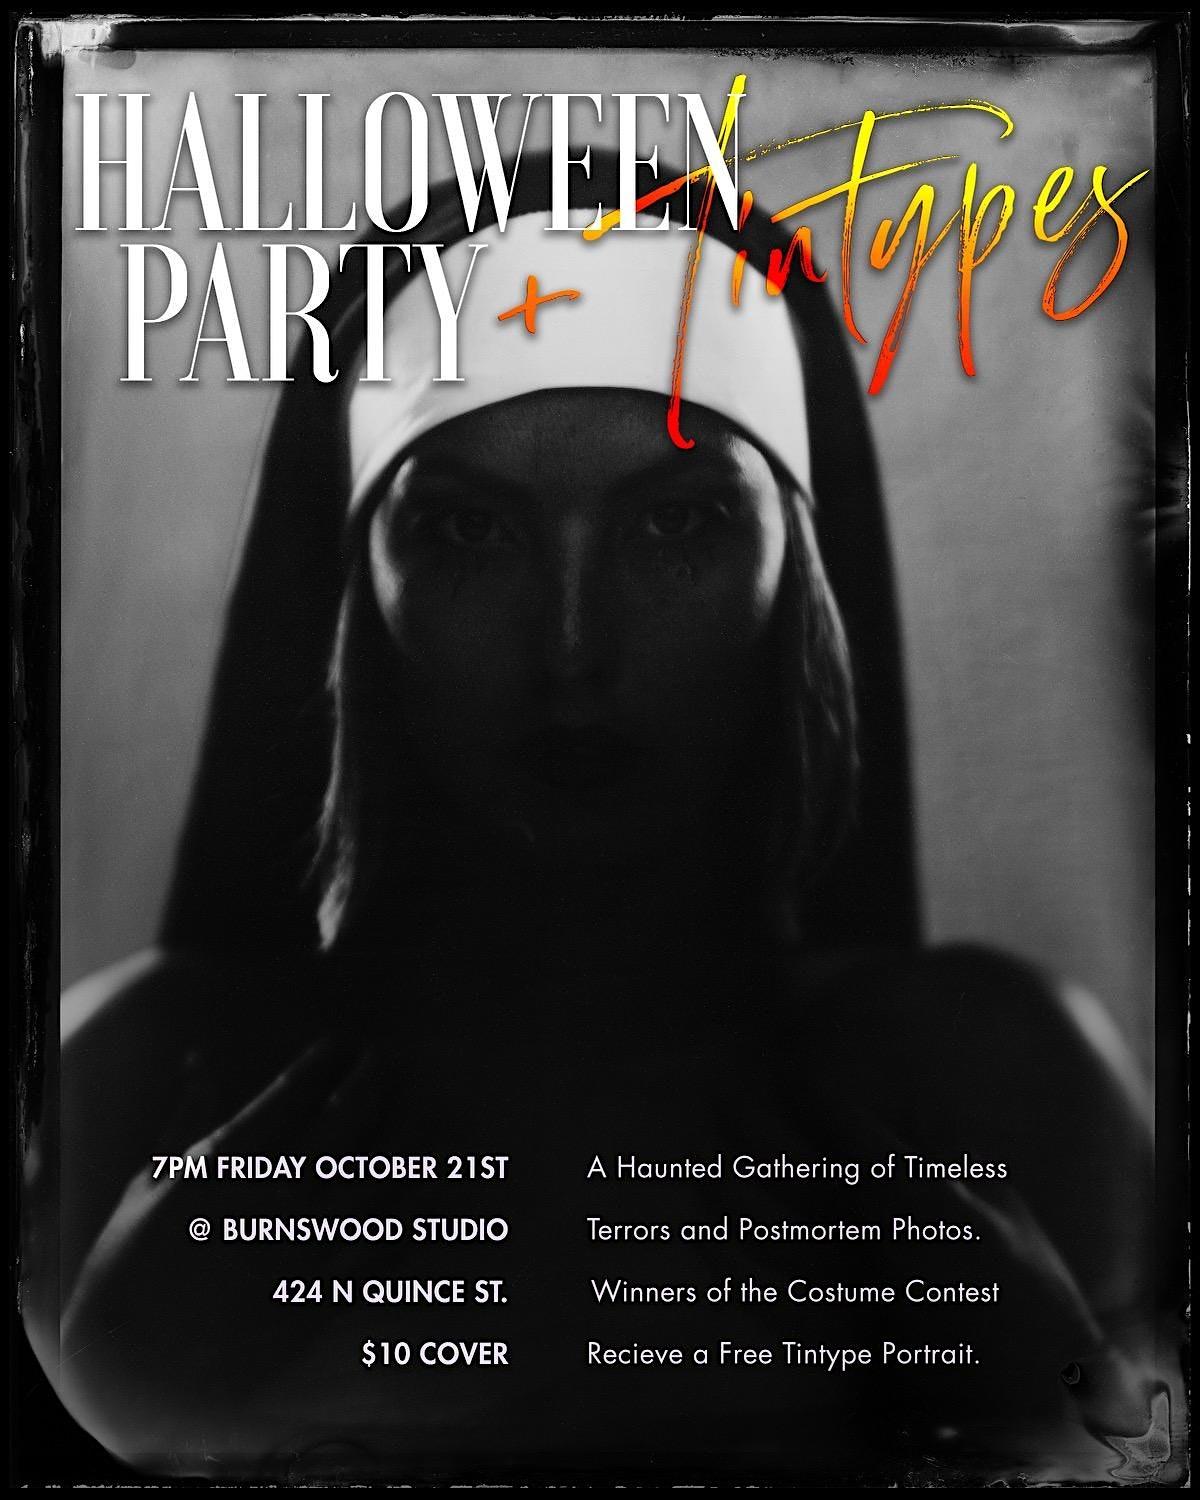 Halloween Party Tintype Photos
Fri Oct 21, 7:00 PM - Sat Oct 22, 12:00 AM